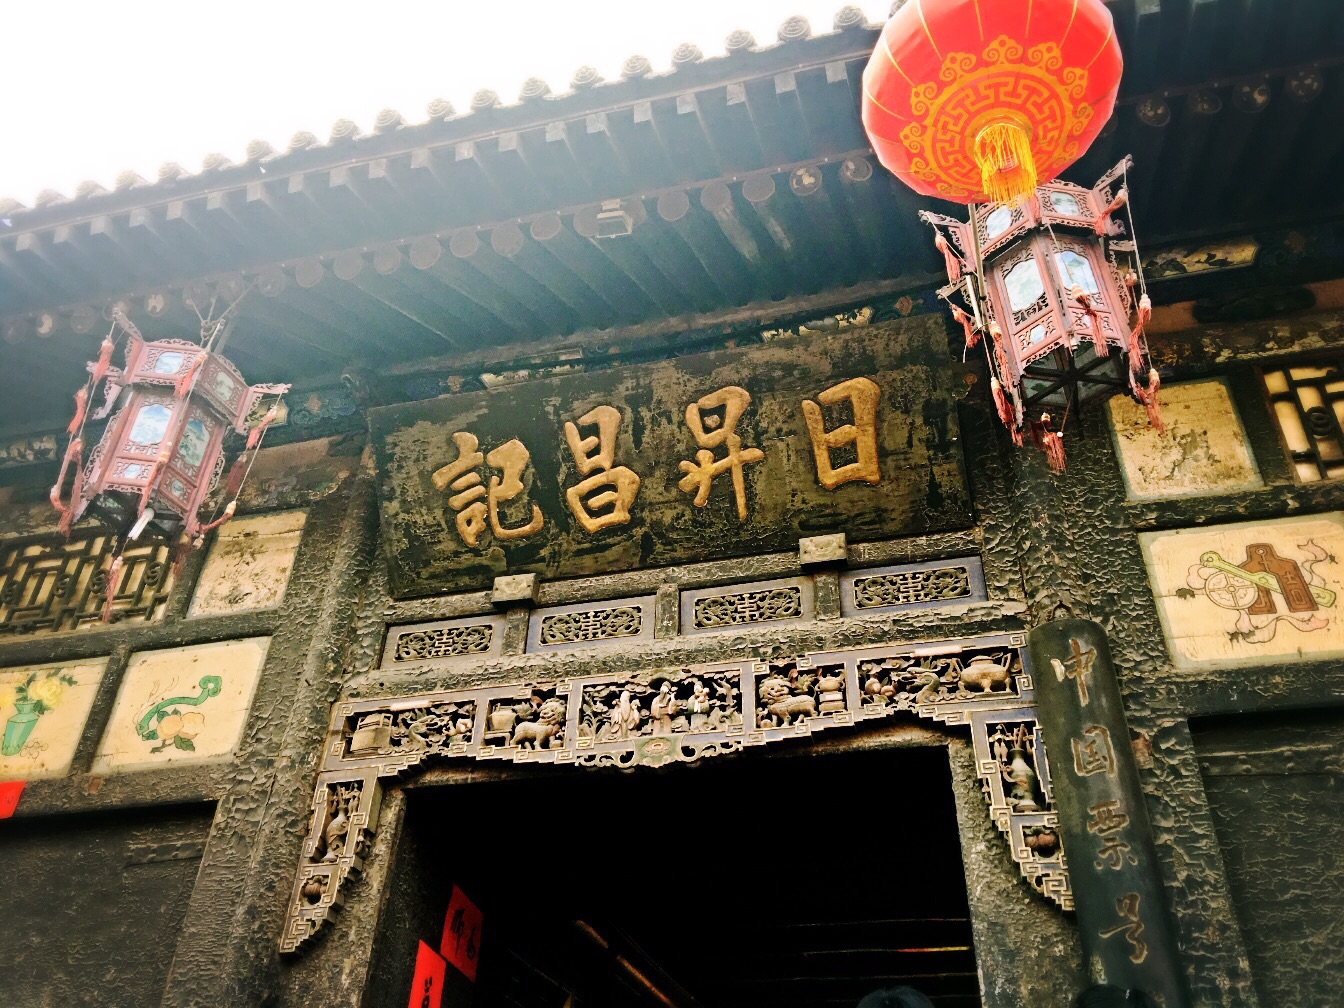 日升昌票号位于山西省平遥古城内,是中国第一家票号,是专营存款,放款